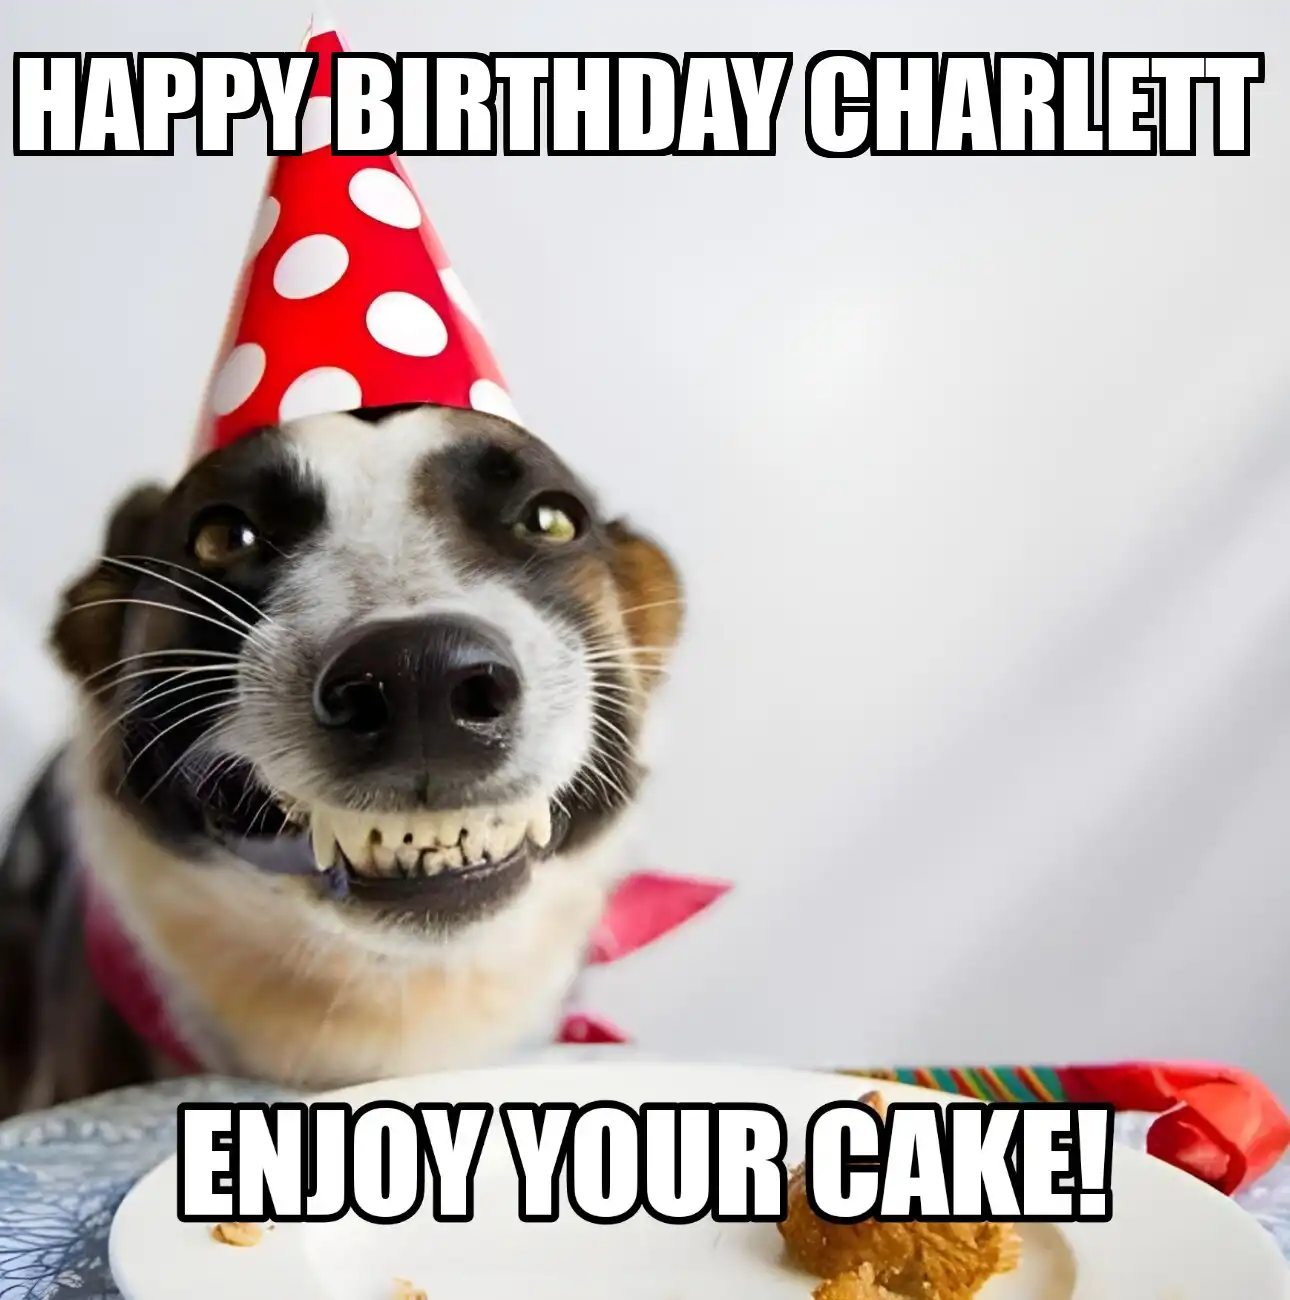 Happy Birthday Charlett Enjoy Your Cake Dog Meme